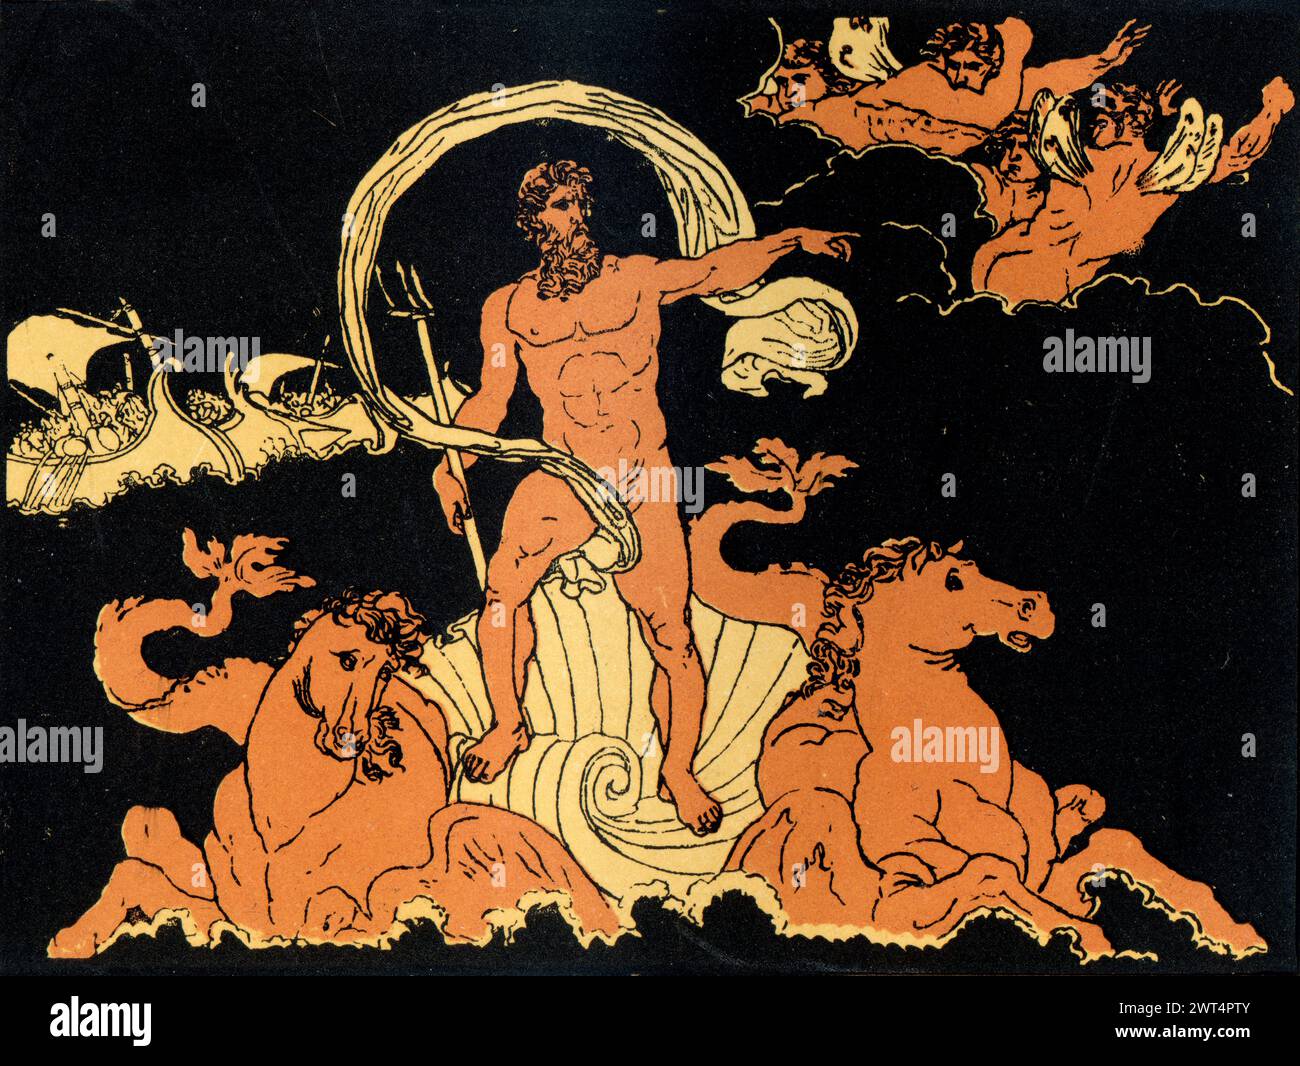 Vintage Illustration römische Mythologie, Neptun, der die Wellen stillt, Aeneid ein lateinisches Epos, das die legendäre Geschichte von Aeneas erzählt, einem Trojaner, der geflohen ist Stockfoto